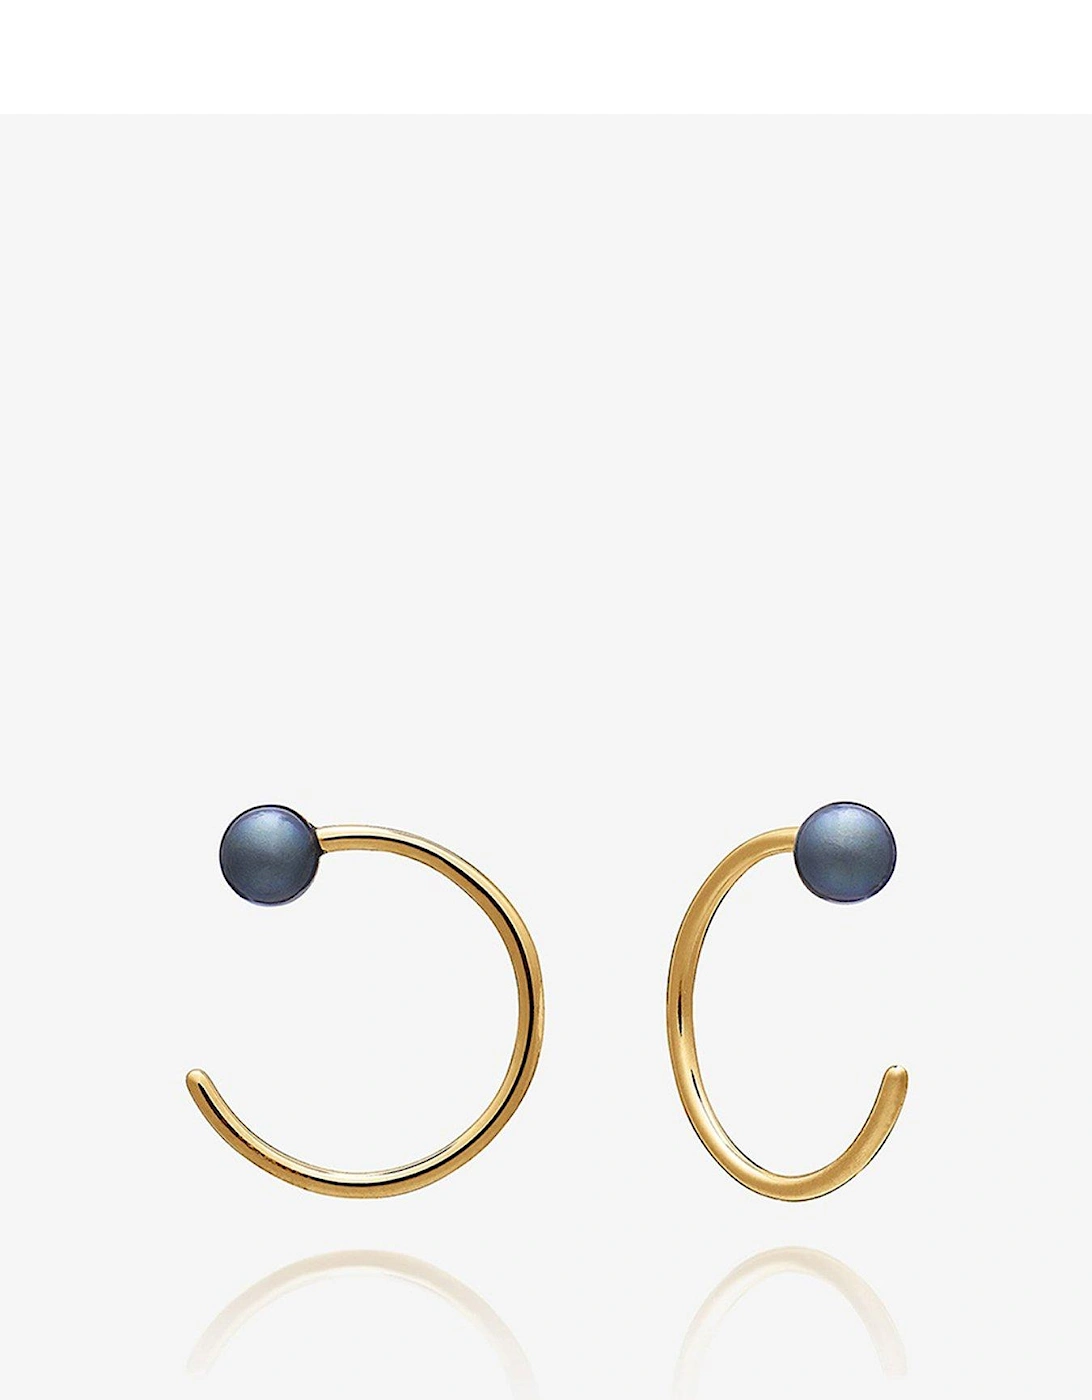 Rachel Jackson Stellar Evolution Black Pearl Hoop Earrings, 2 of 1